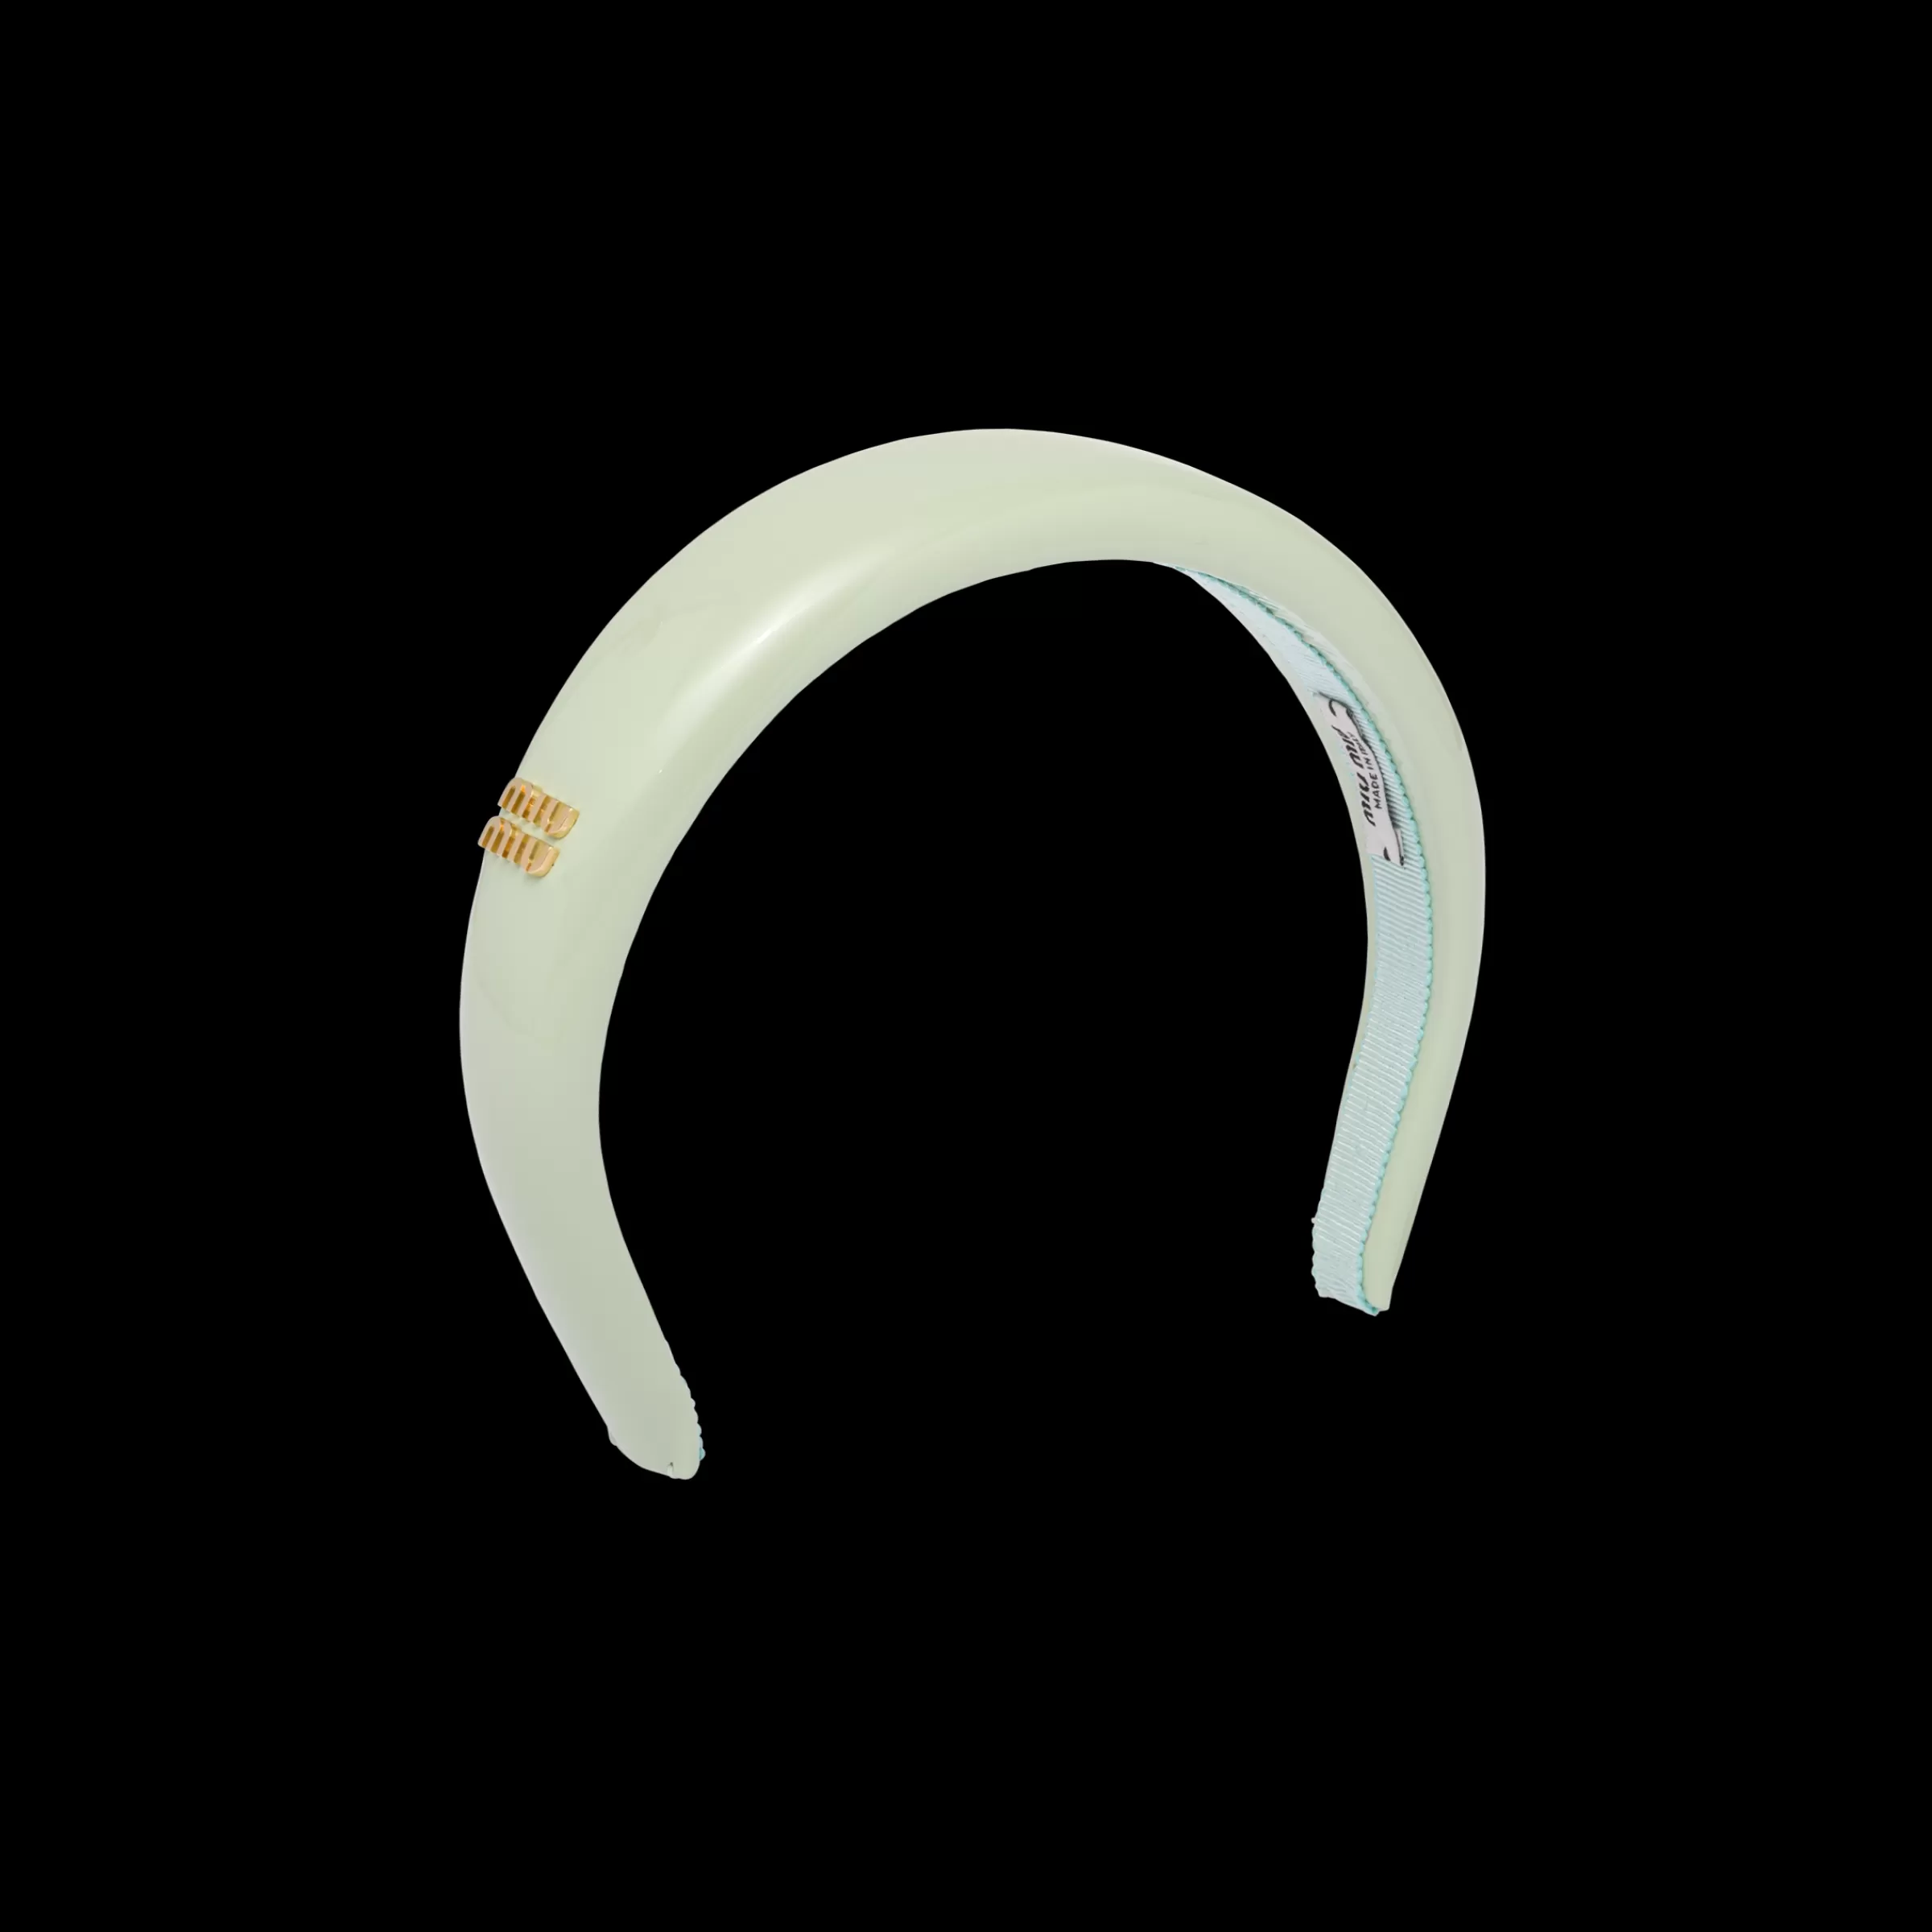 Miu Miu Patent Leather Headband |